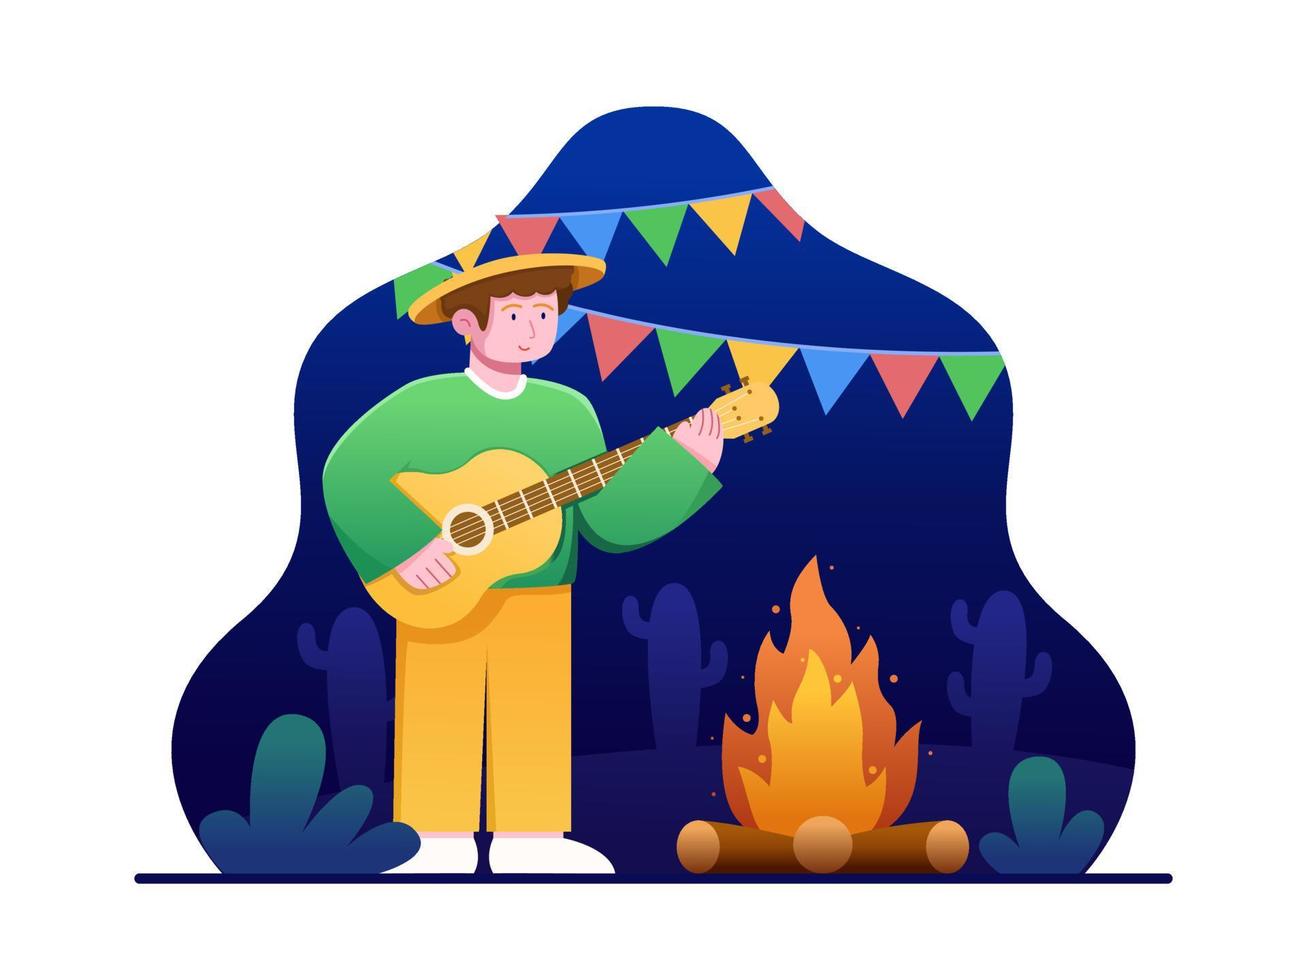 illustration vectorielle de personnes jouant de la guitare près d'un feu de joie pour célébrer la festa junina la nuit. peut être utilisé pour les cartes de vœux, le Web, les cartes postales, les médias sociaux, l'impression, etc. vecteur